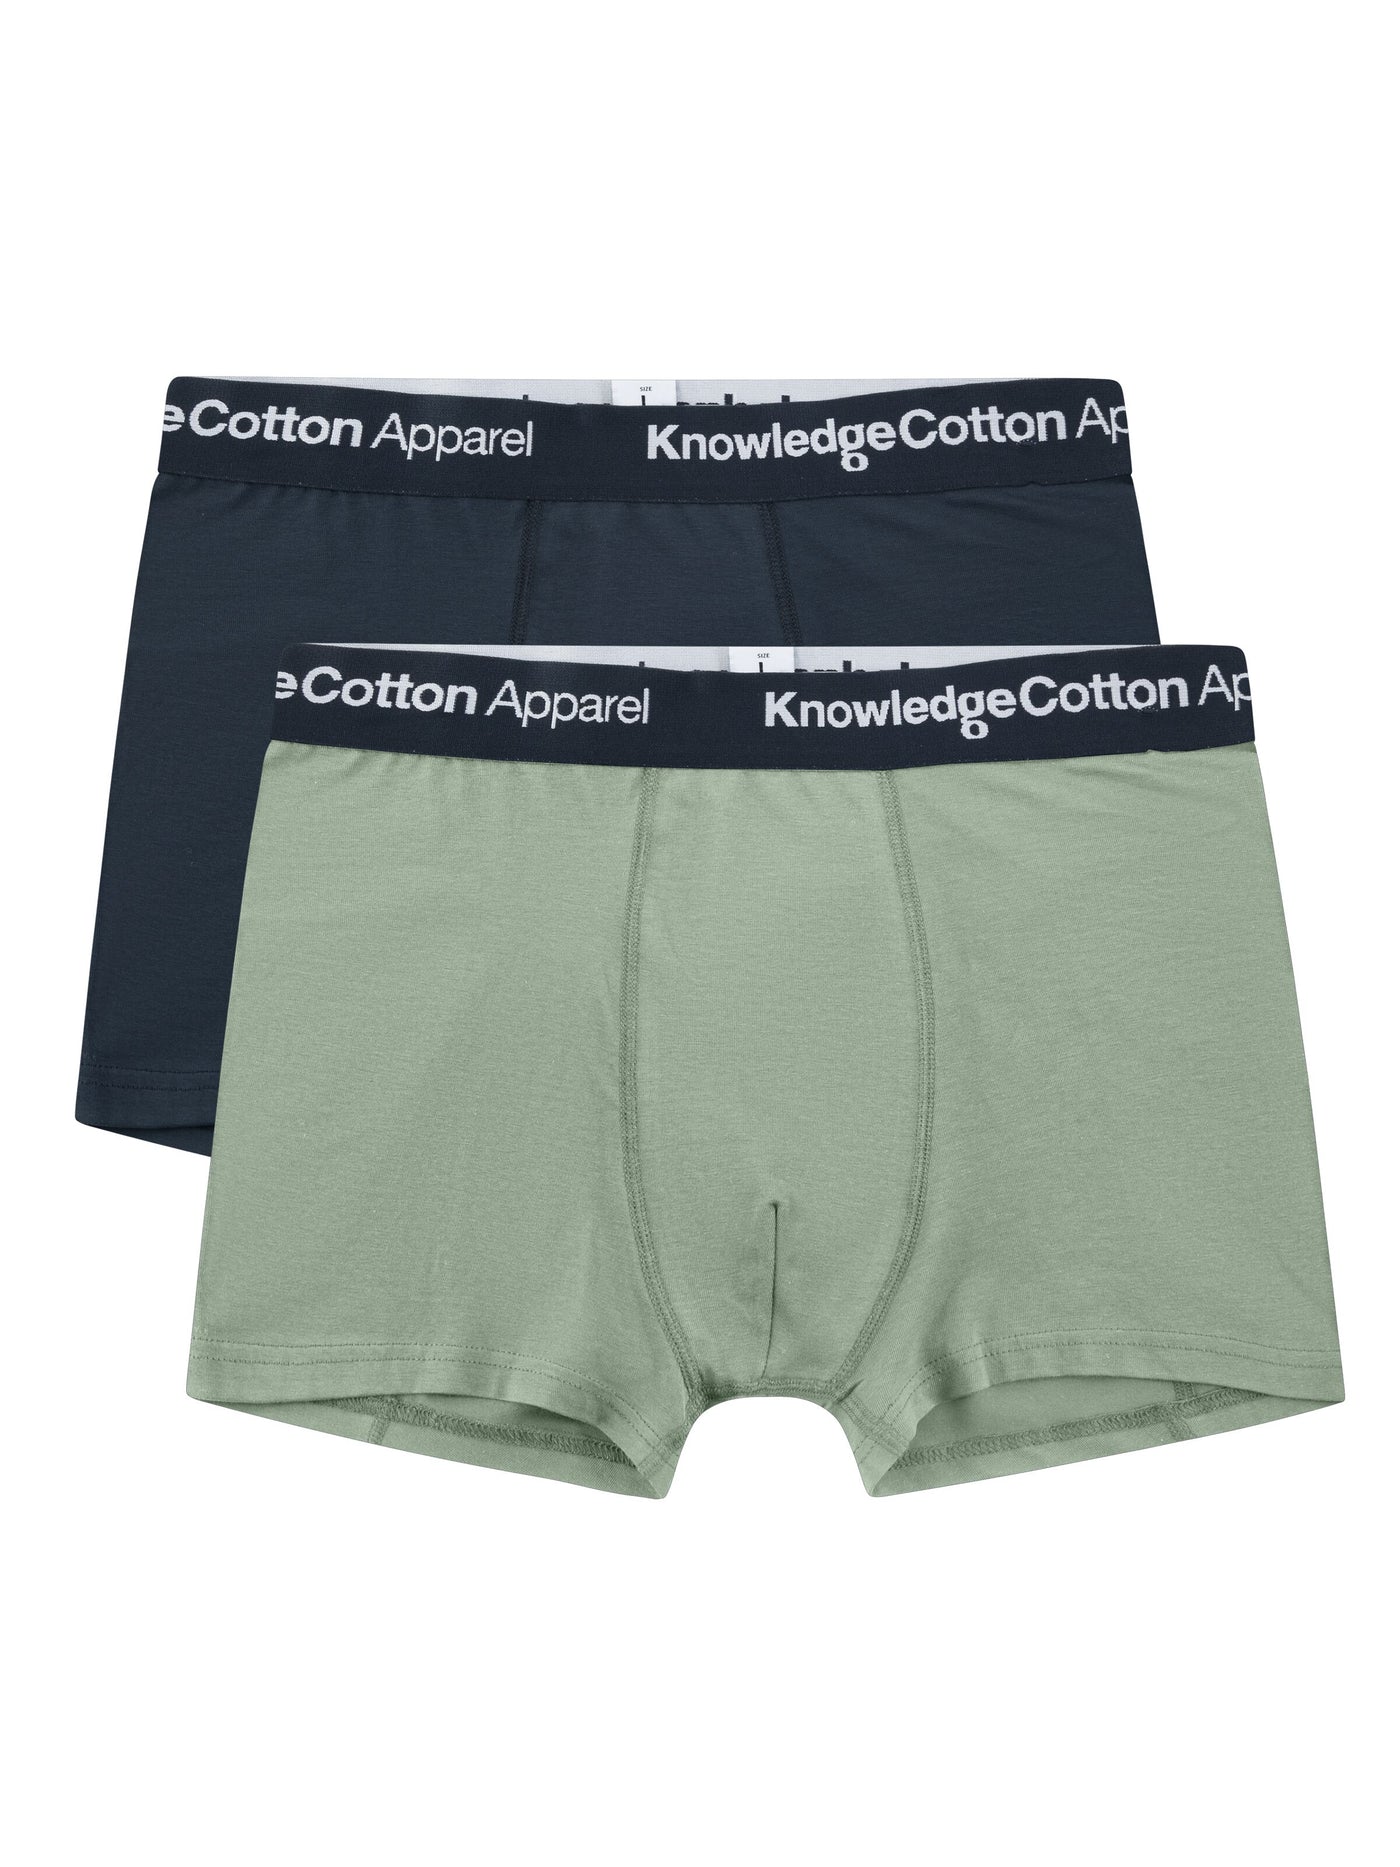 2-pack Boxer Briefs Underwear Lily Pad von Knowledge Cotton Apparel.